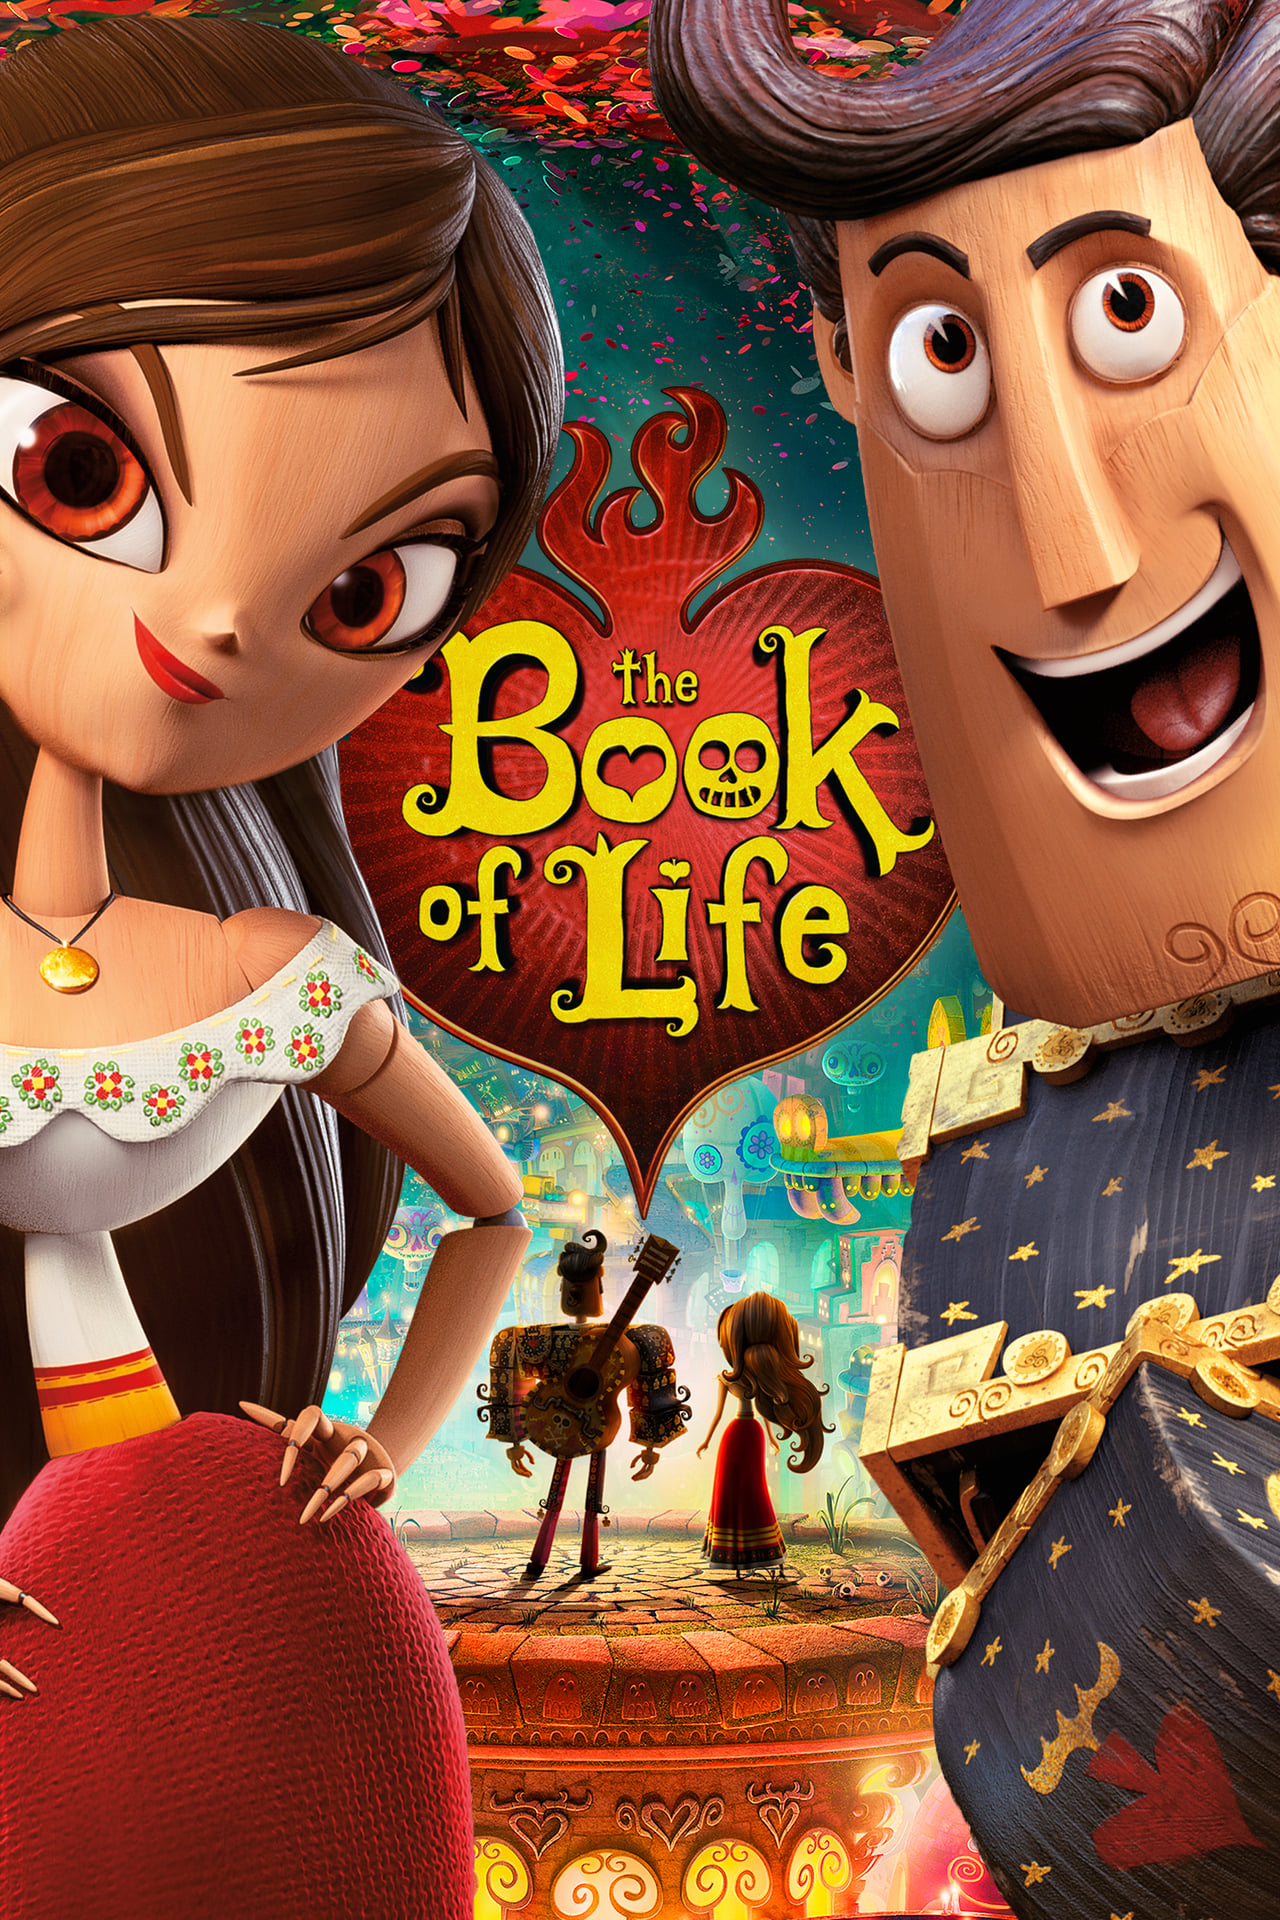 Ver El libro de la vida (2014) Online Latino HD Pelisplus